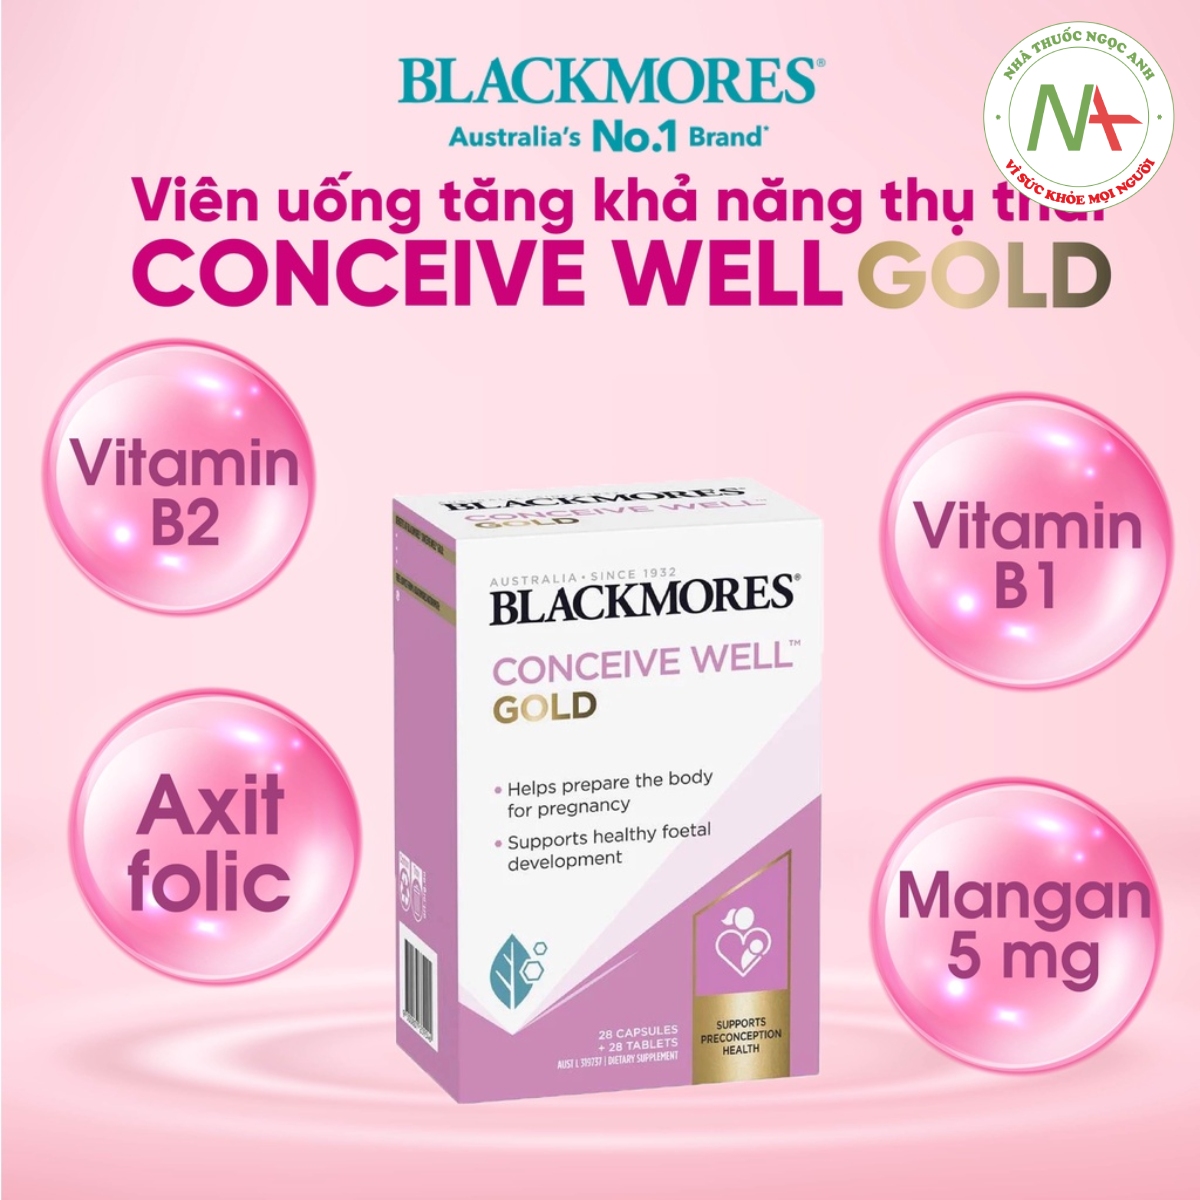 Blackmores Conceive Well Gold gồm các vitamin và khoáng chất